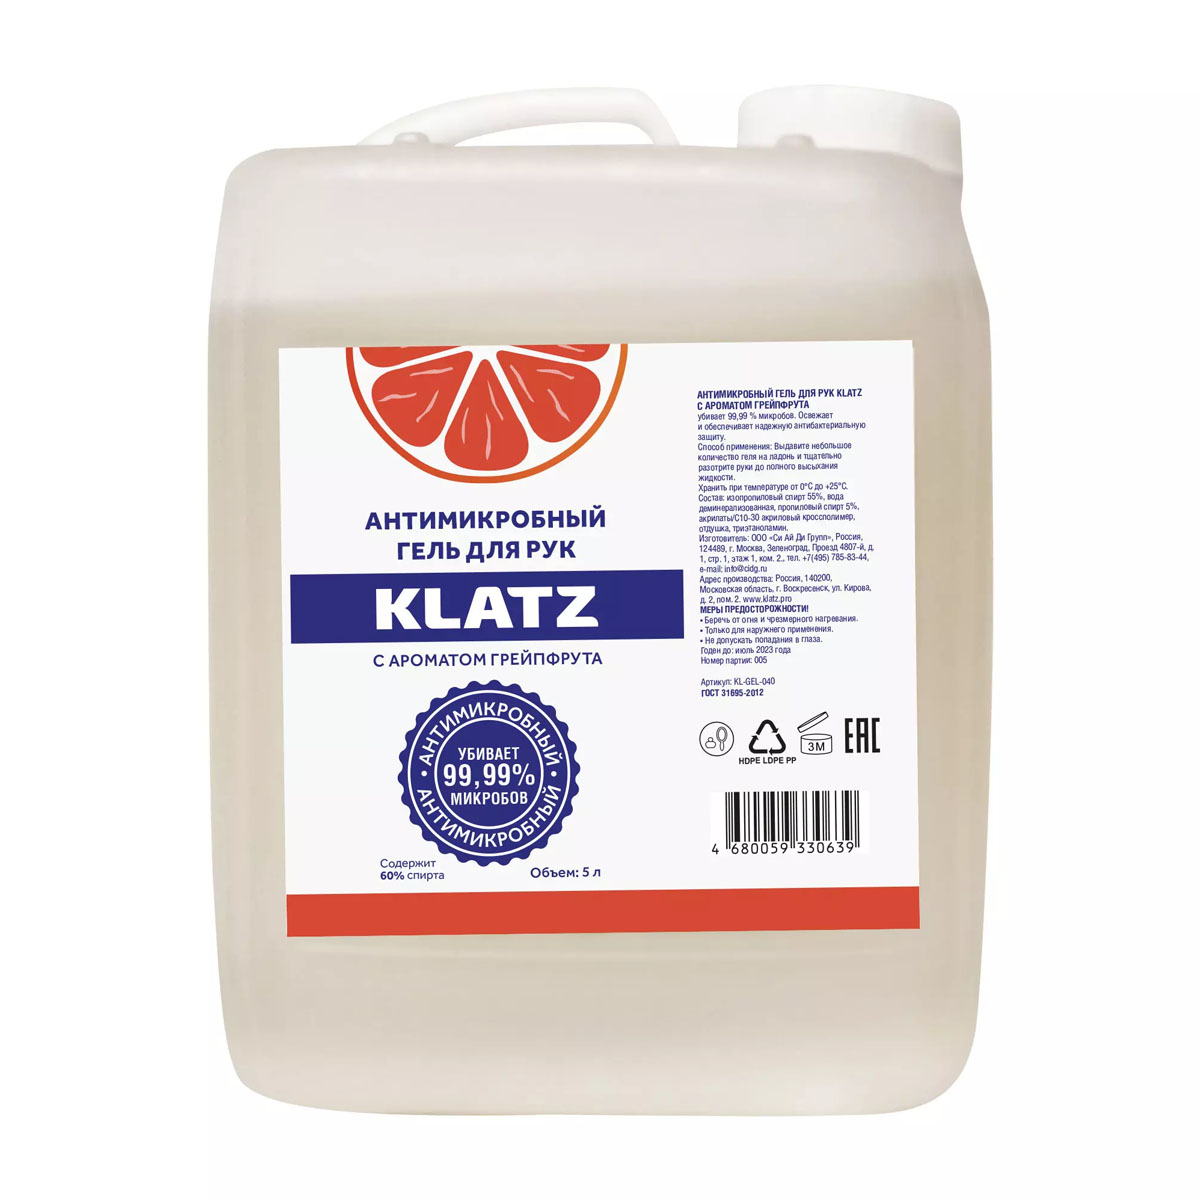 Klatz Антимикробный гель для рук с ароматом грейпфрута, 5 л 